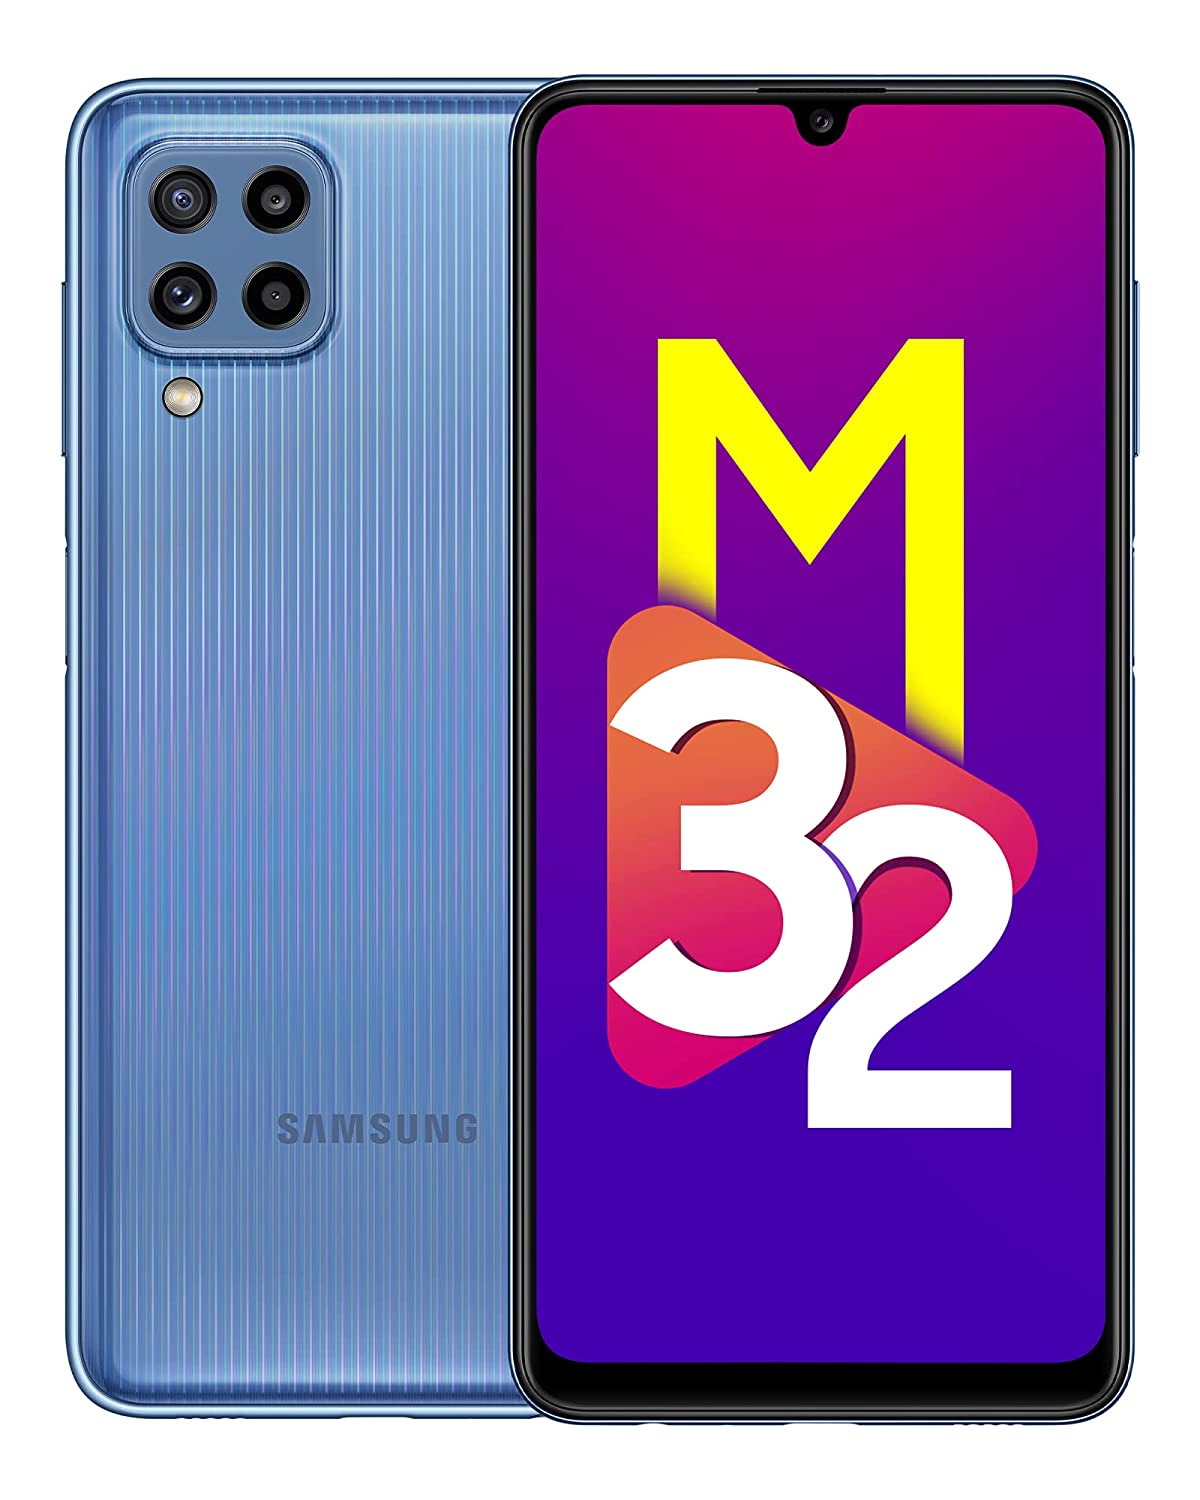 Samsung Galaxy M32: सिर्फ आज के लिए 10 हजार में मिल रहा है सैमसंग का 64MP कैमरे वाला ये फोन!